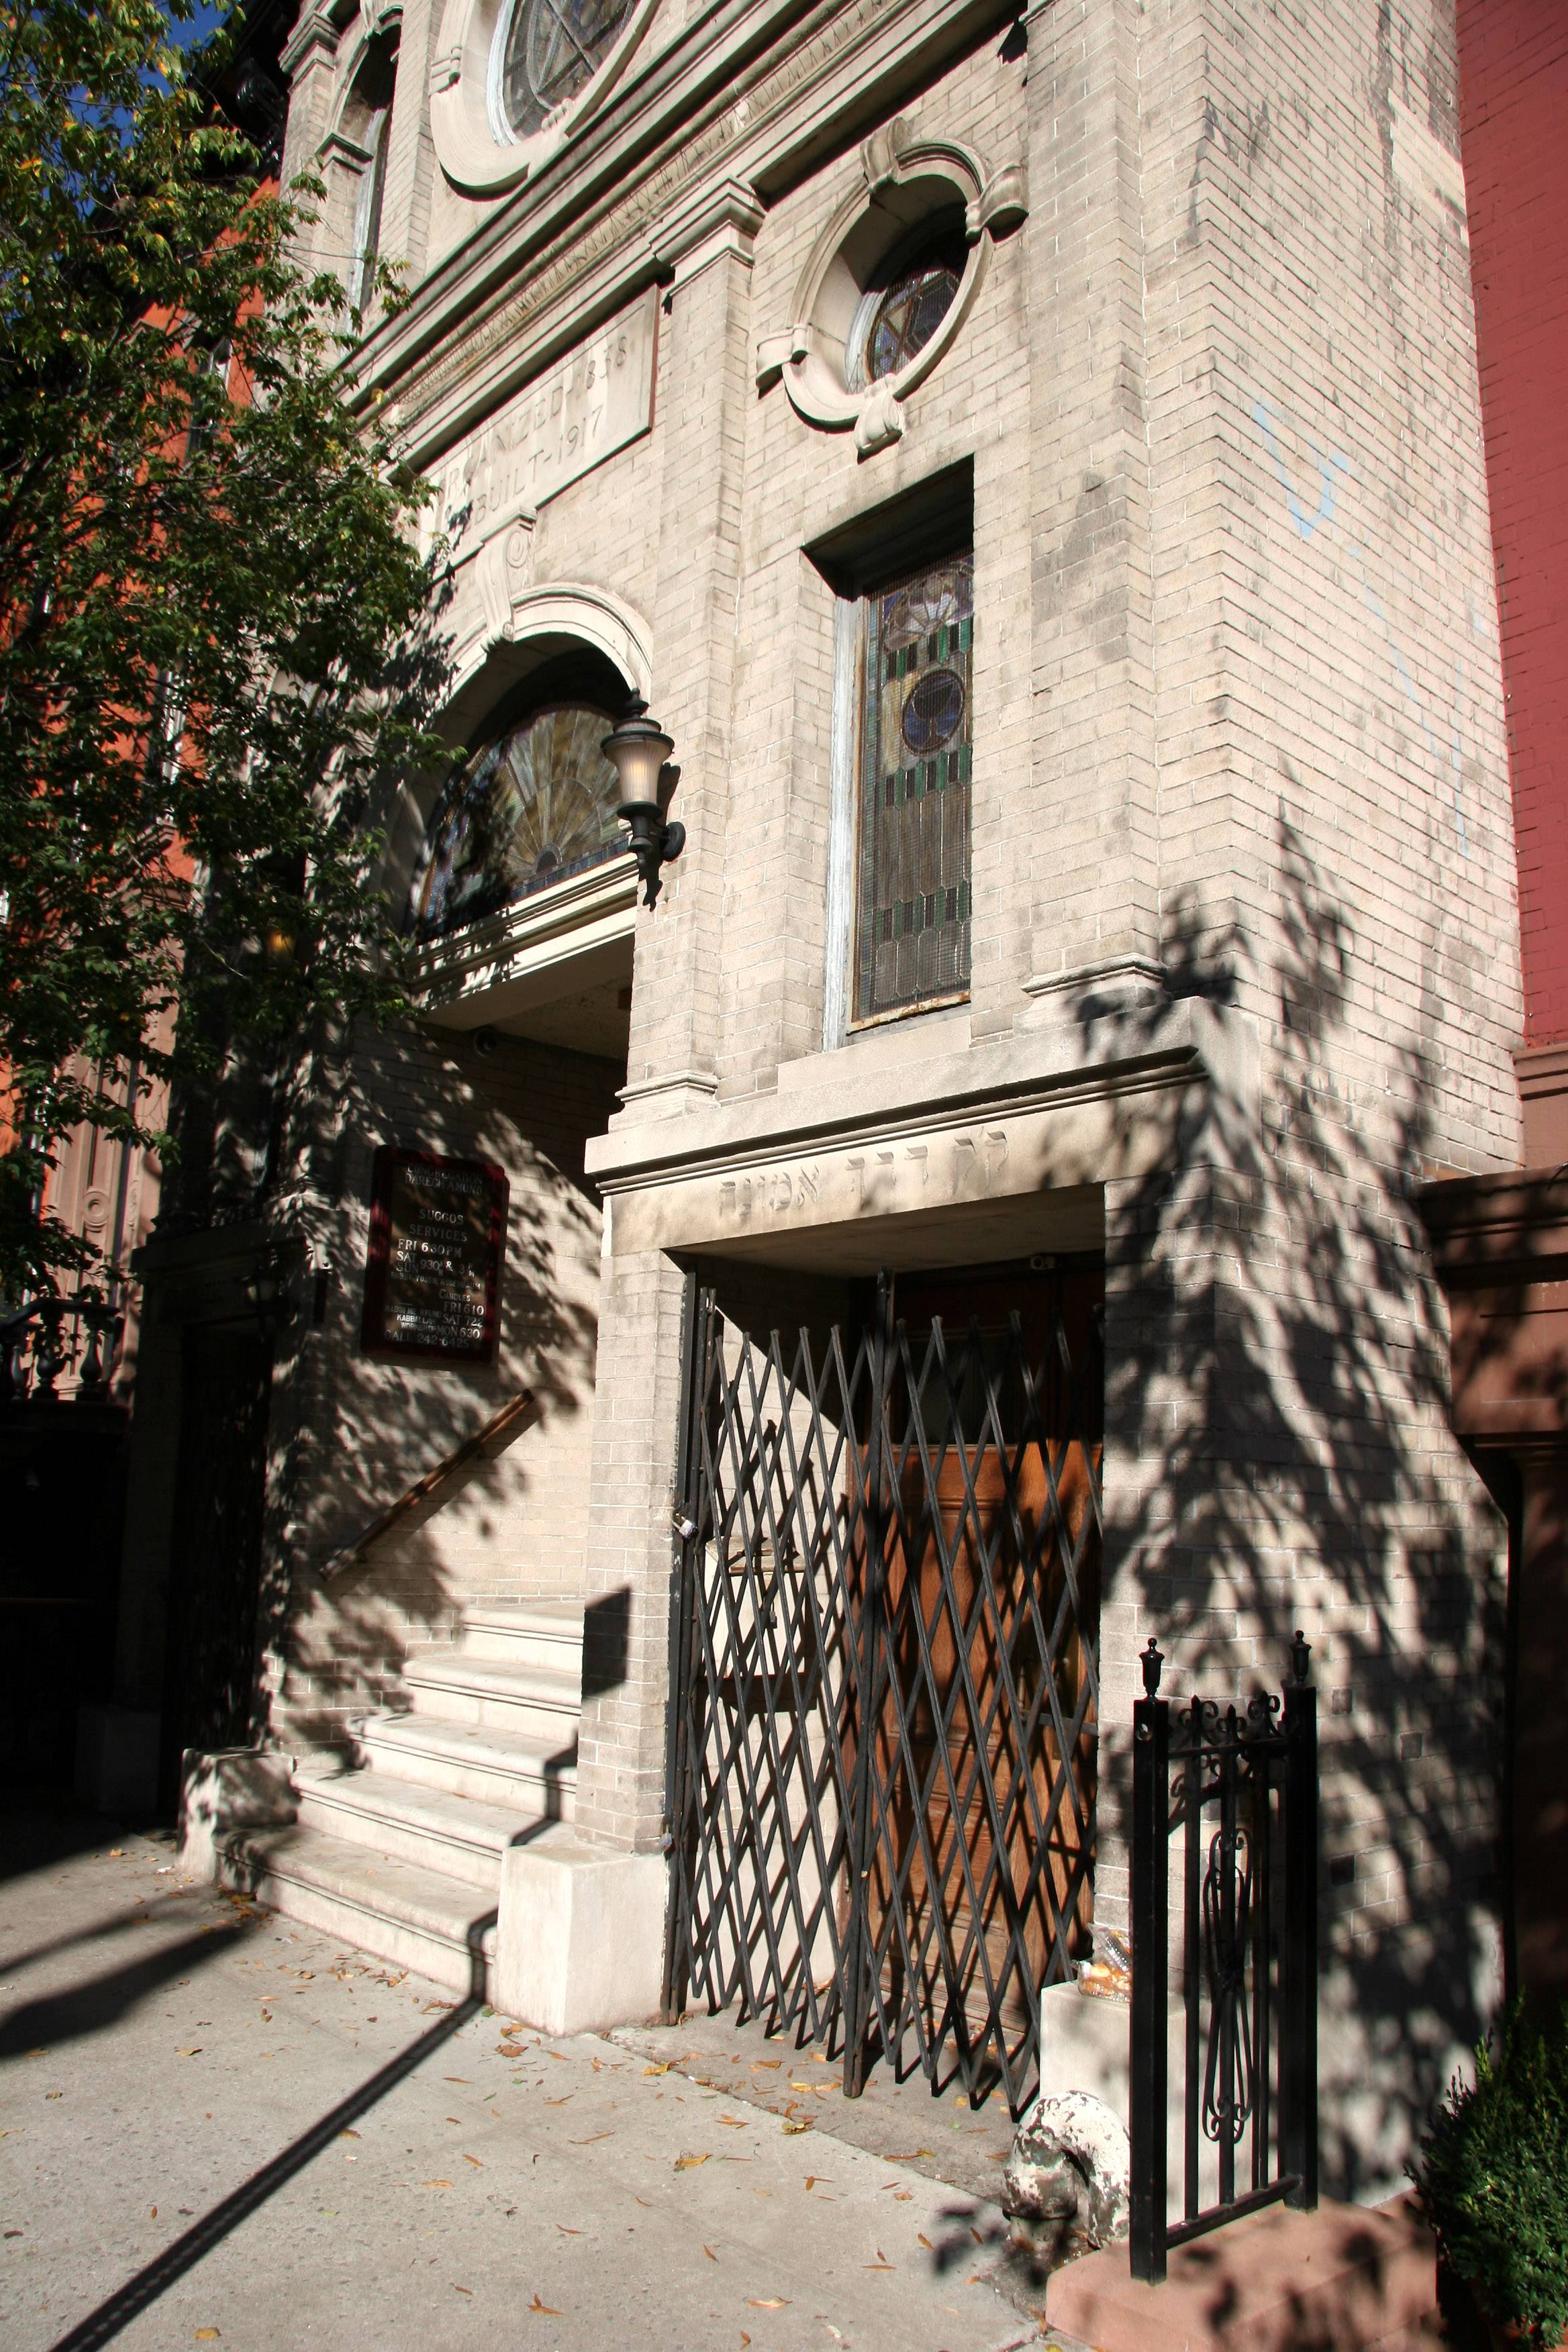 Synagogue near West 4th Street